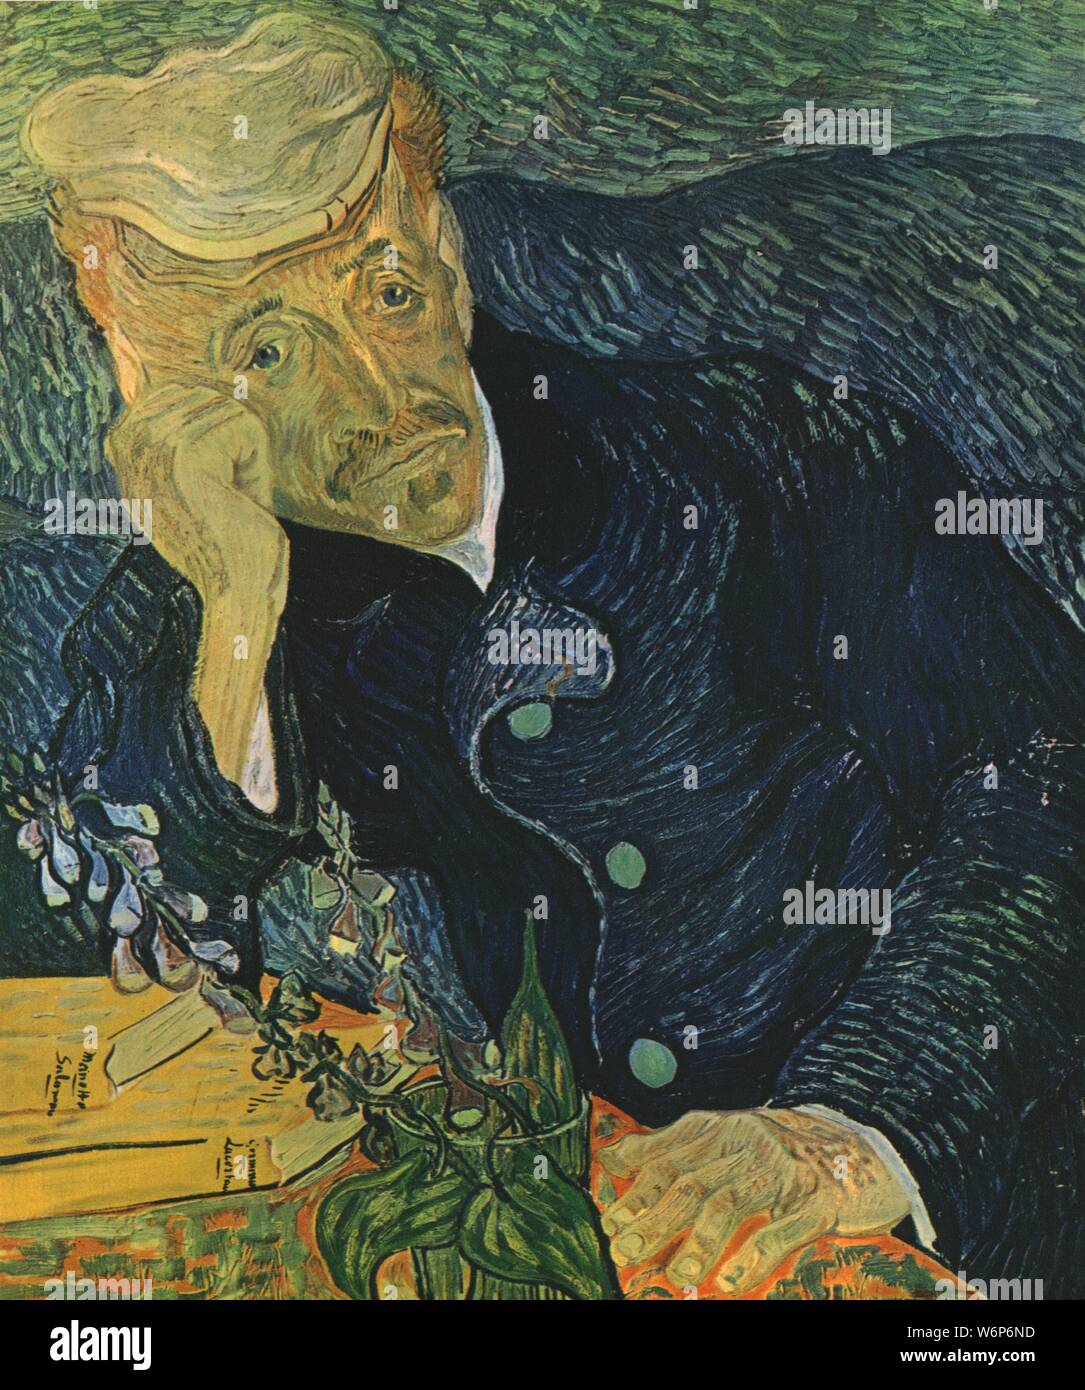 " Ritratto di dr Paul Gachet", giugno 1890, (1947). Paul-Ferdinand Gachet (1828-1909) trattati il pittore Vincent van Gogh, verso la fine della sua vita. Gachet, un pittore dilettante egli stesso, è stato un grande sostenitore degli artisti e del movimento impressionista. Pittura in una collezione privata. Da "Vincent van Gogh", di Ludwig Goldscheider e Wilhelm Uhde. [Phaidon Press Ltd, Oxford e Londra, 1947] Foto Stock